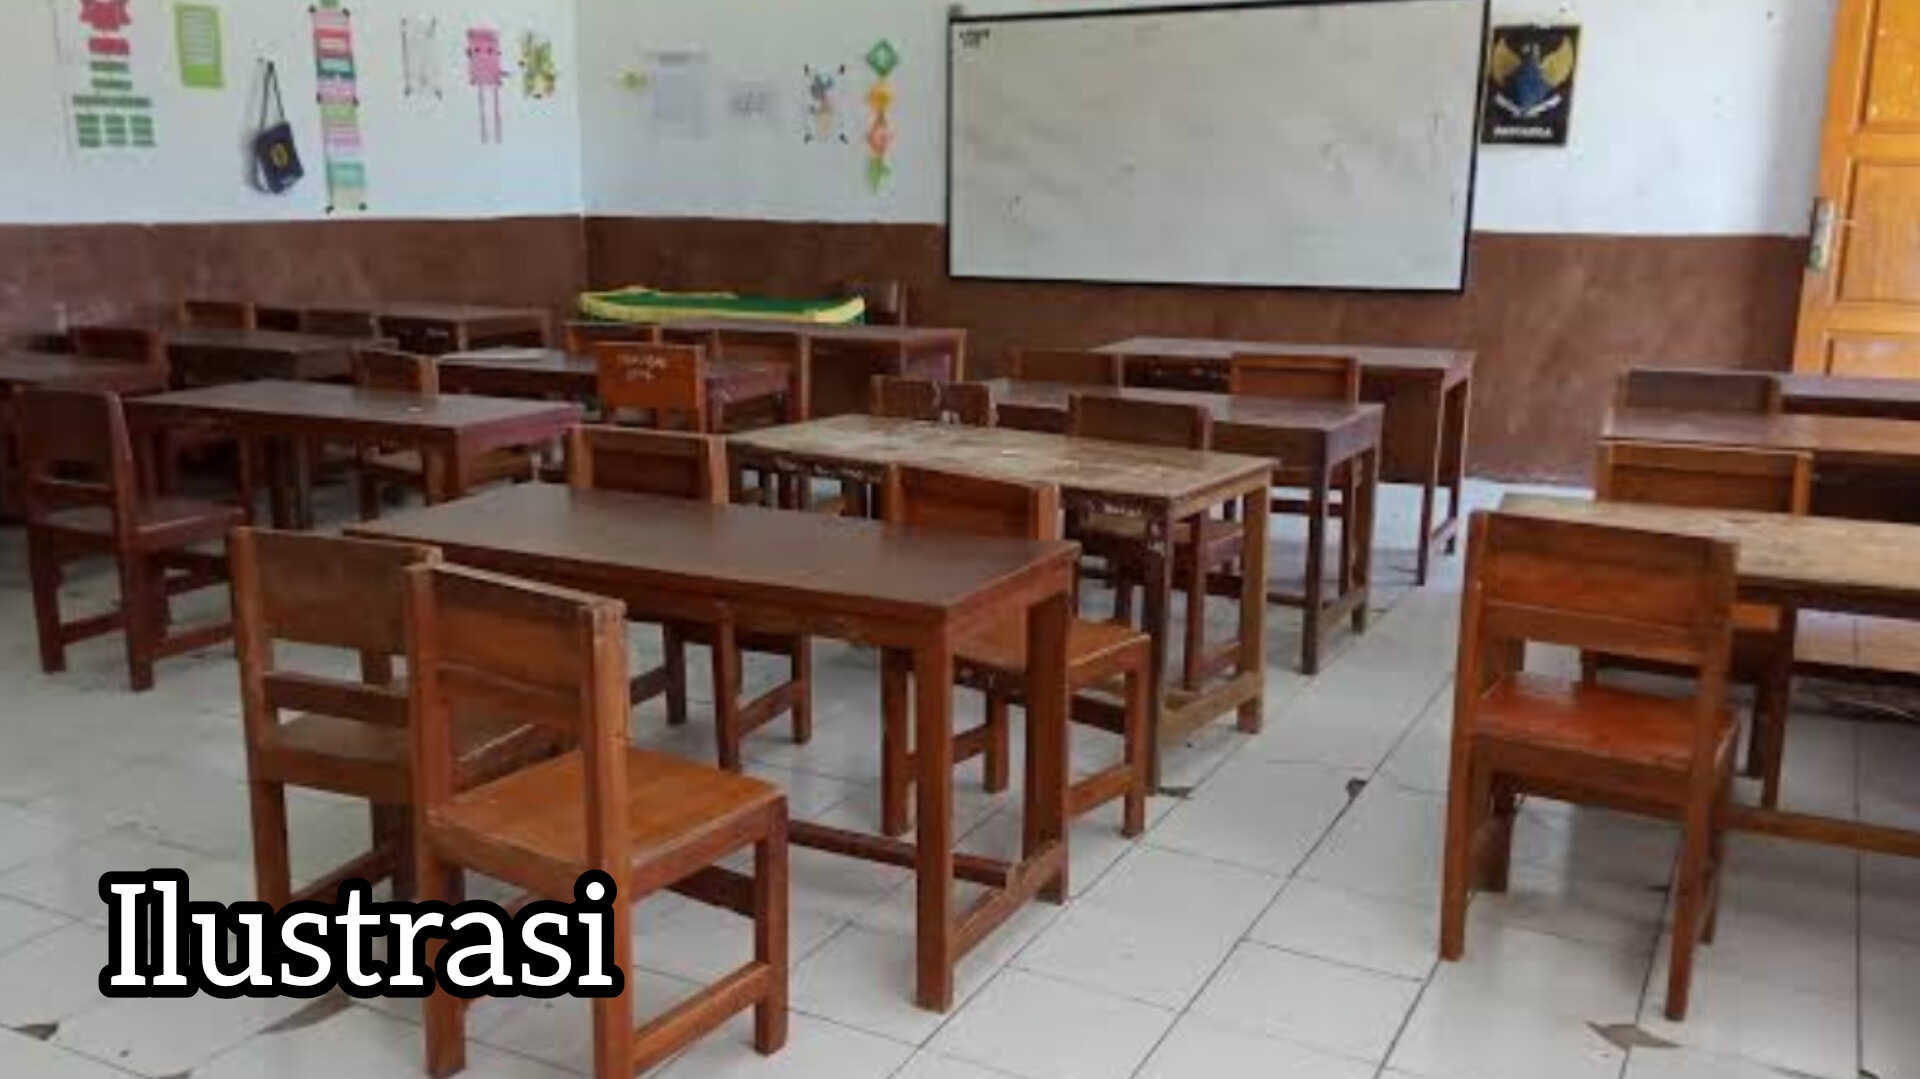 Sekolah Negeri Overload, Nasib Sekolah Swasta di Kota Prabumulih di Ujung Tanduk?